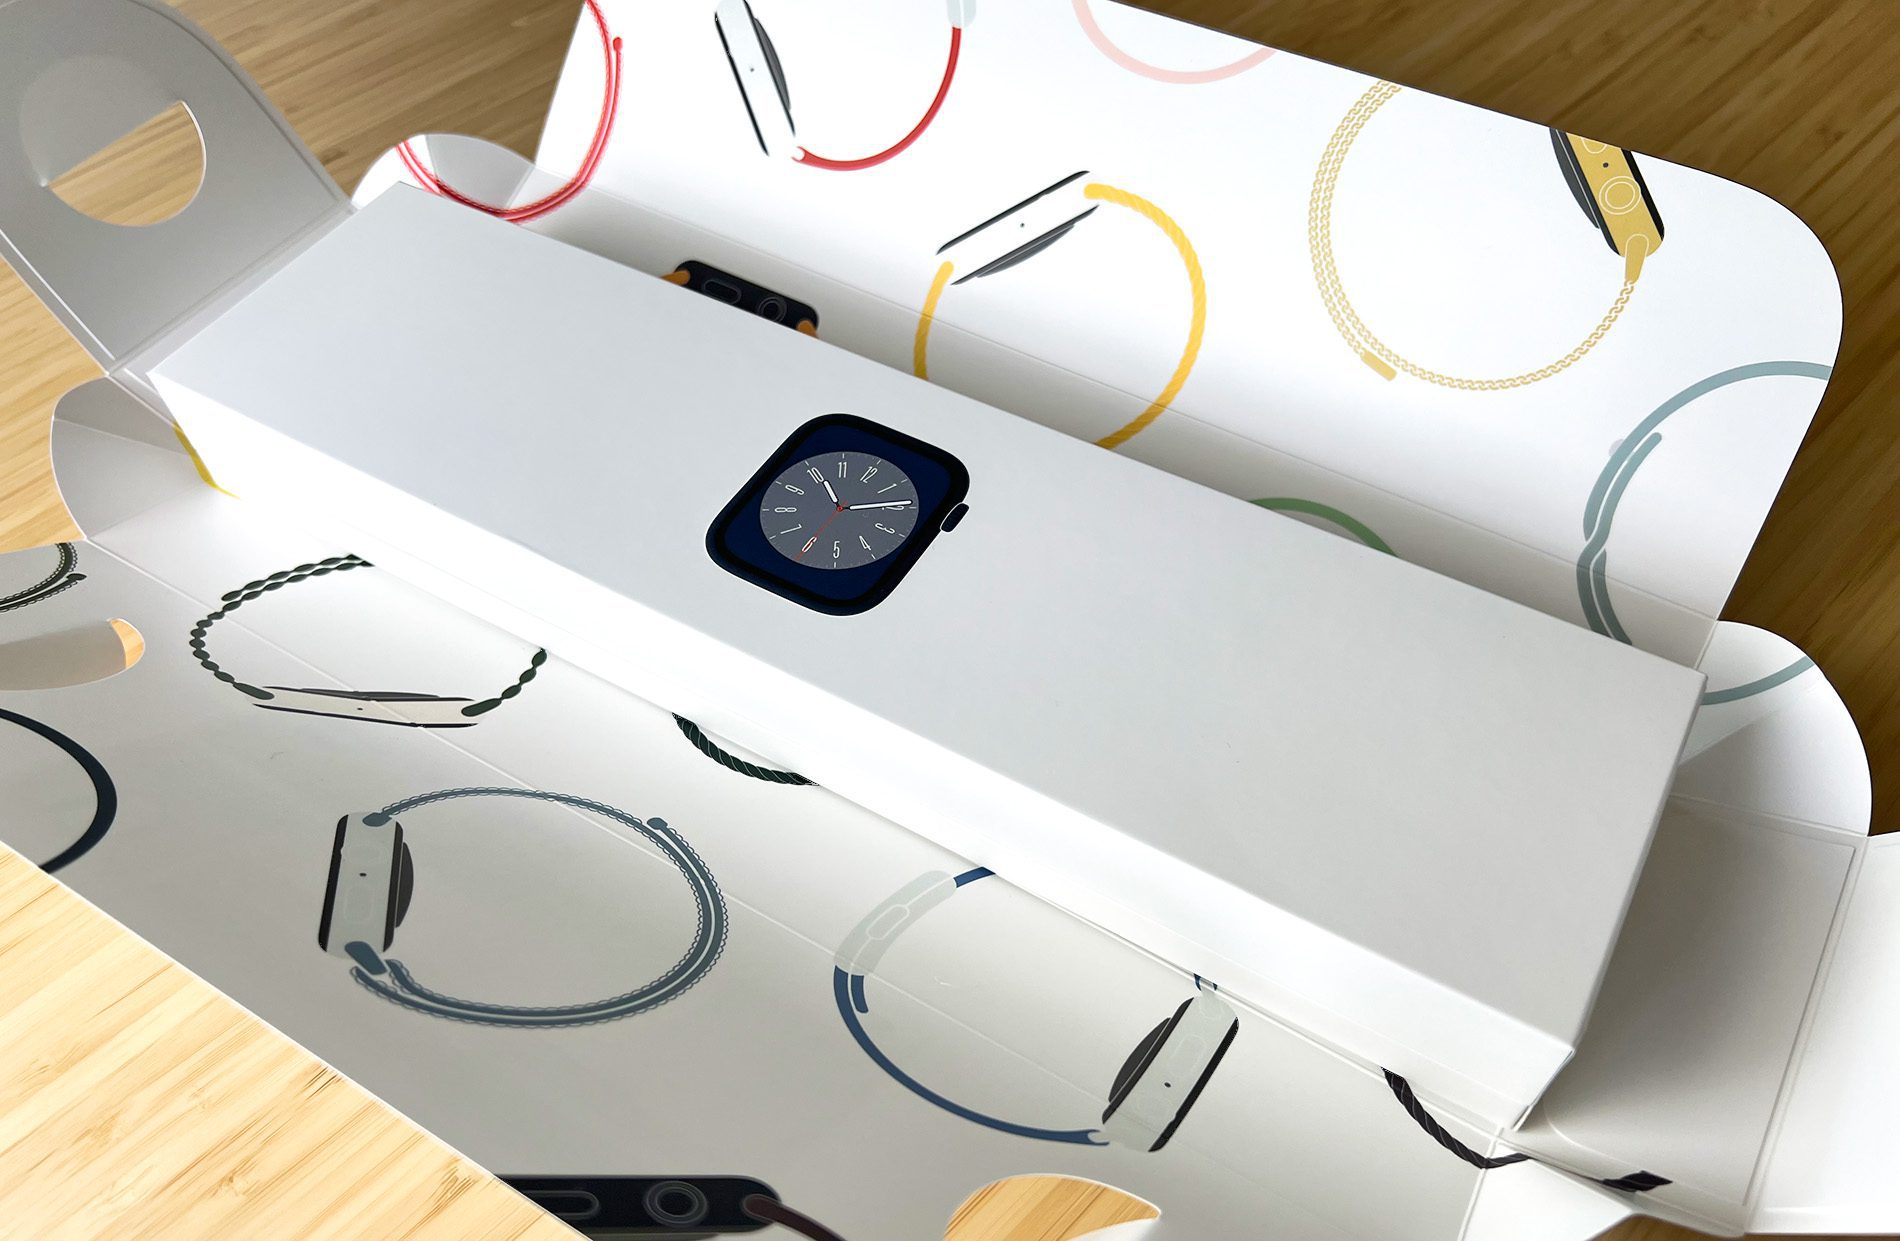 Die Verpackung der Apple Watch ist schon ein kleines Design-Kunstwerk, aber besonders gut finde ich, dass Apple weitgehend auf Kunststoff verzichtet und auf Papier und Pappe setzt.